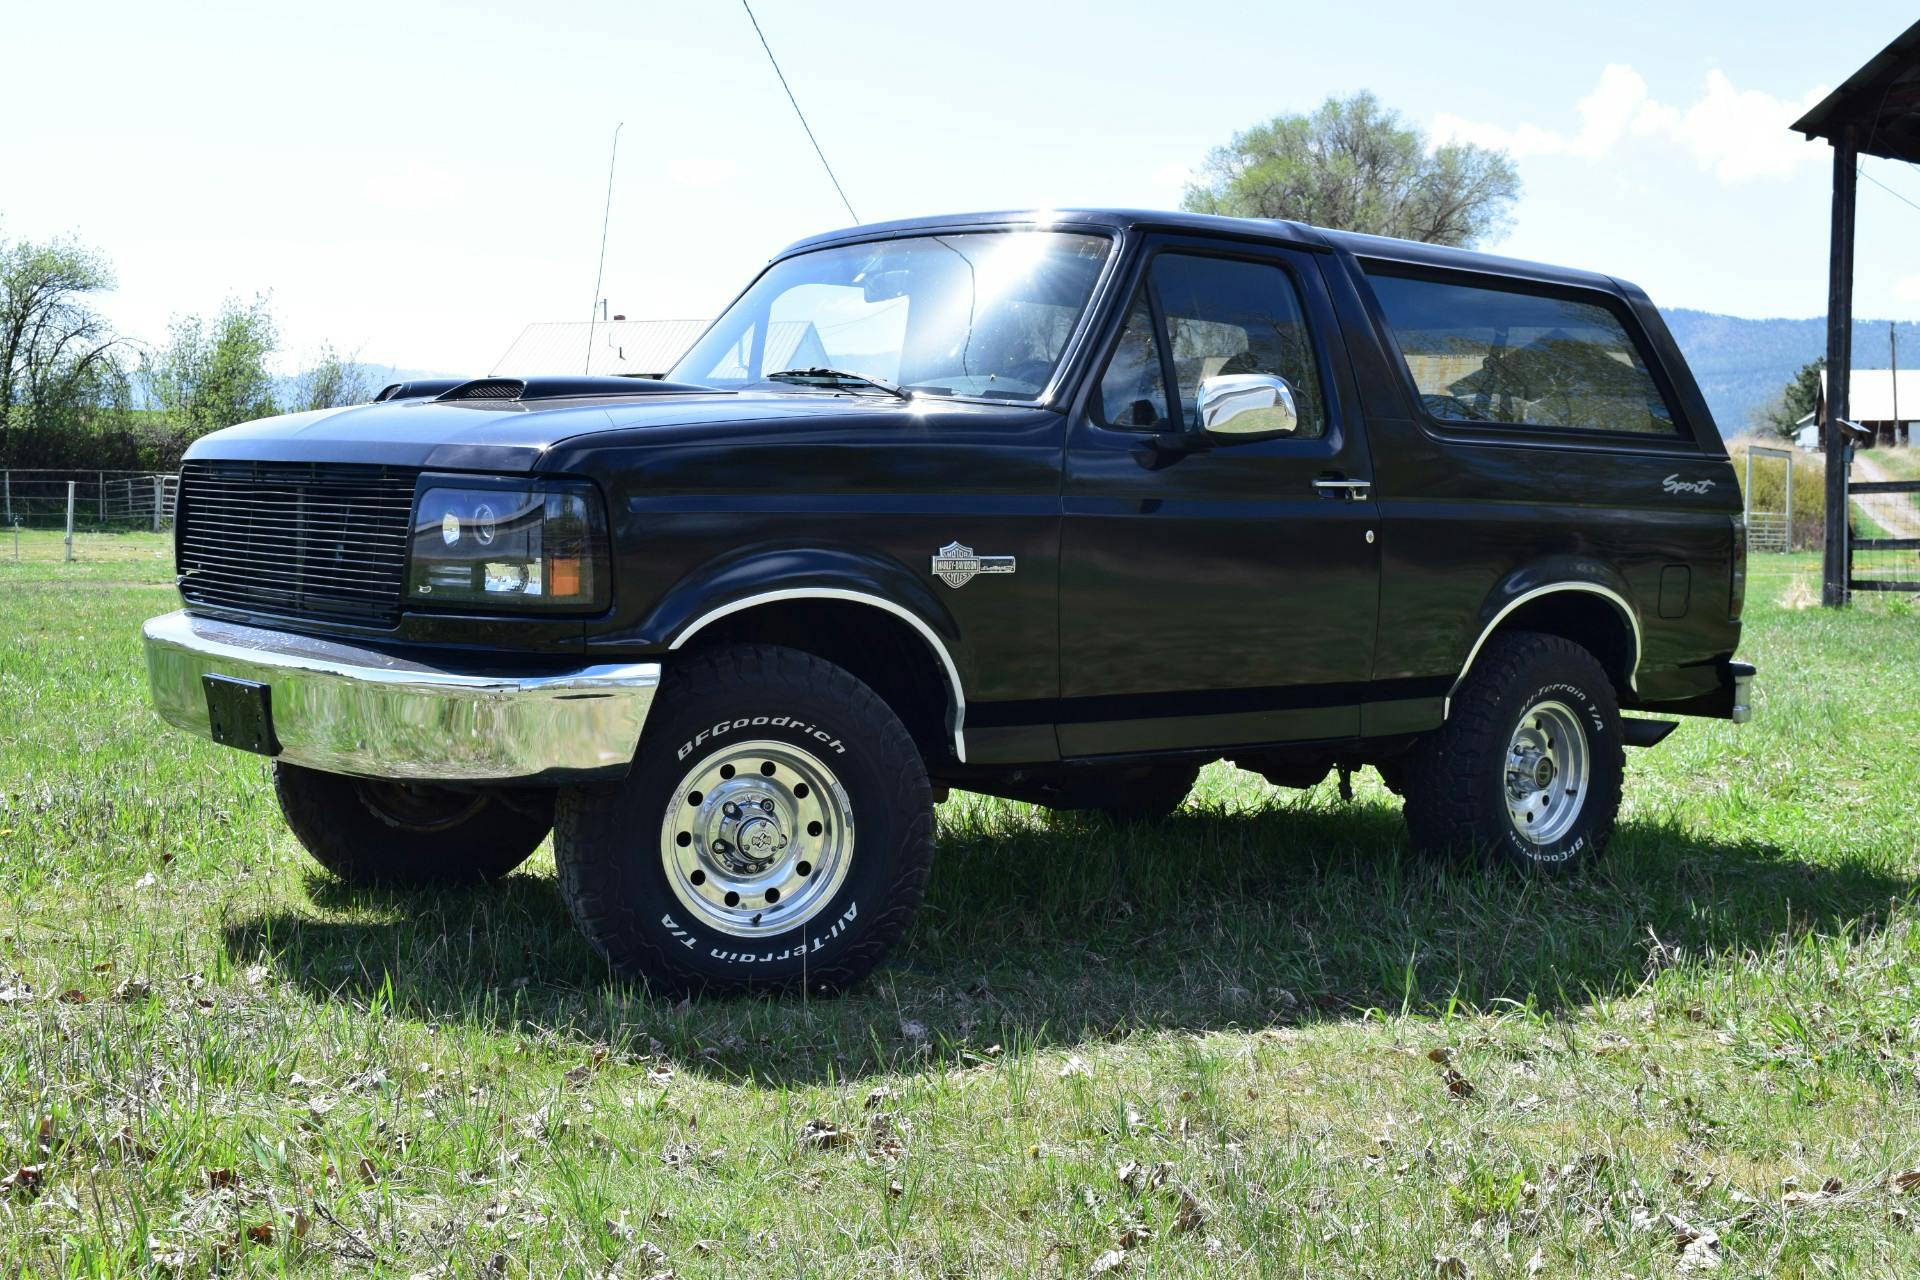 Ford-Bronco-1995-2024-02-19T22:39:04.255Z